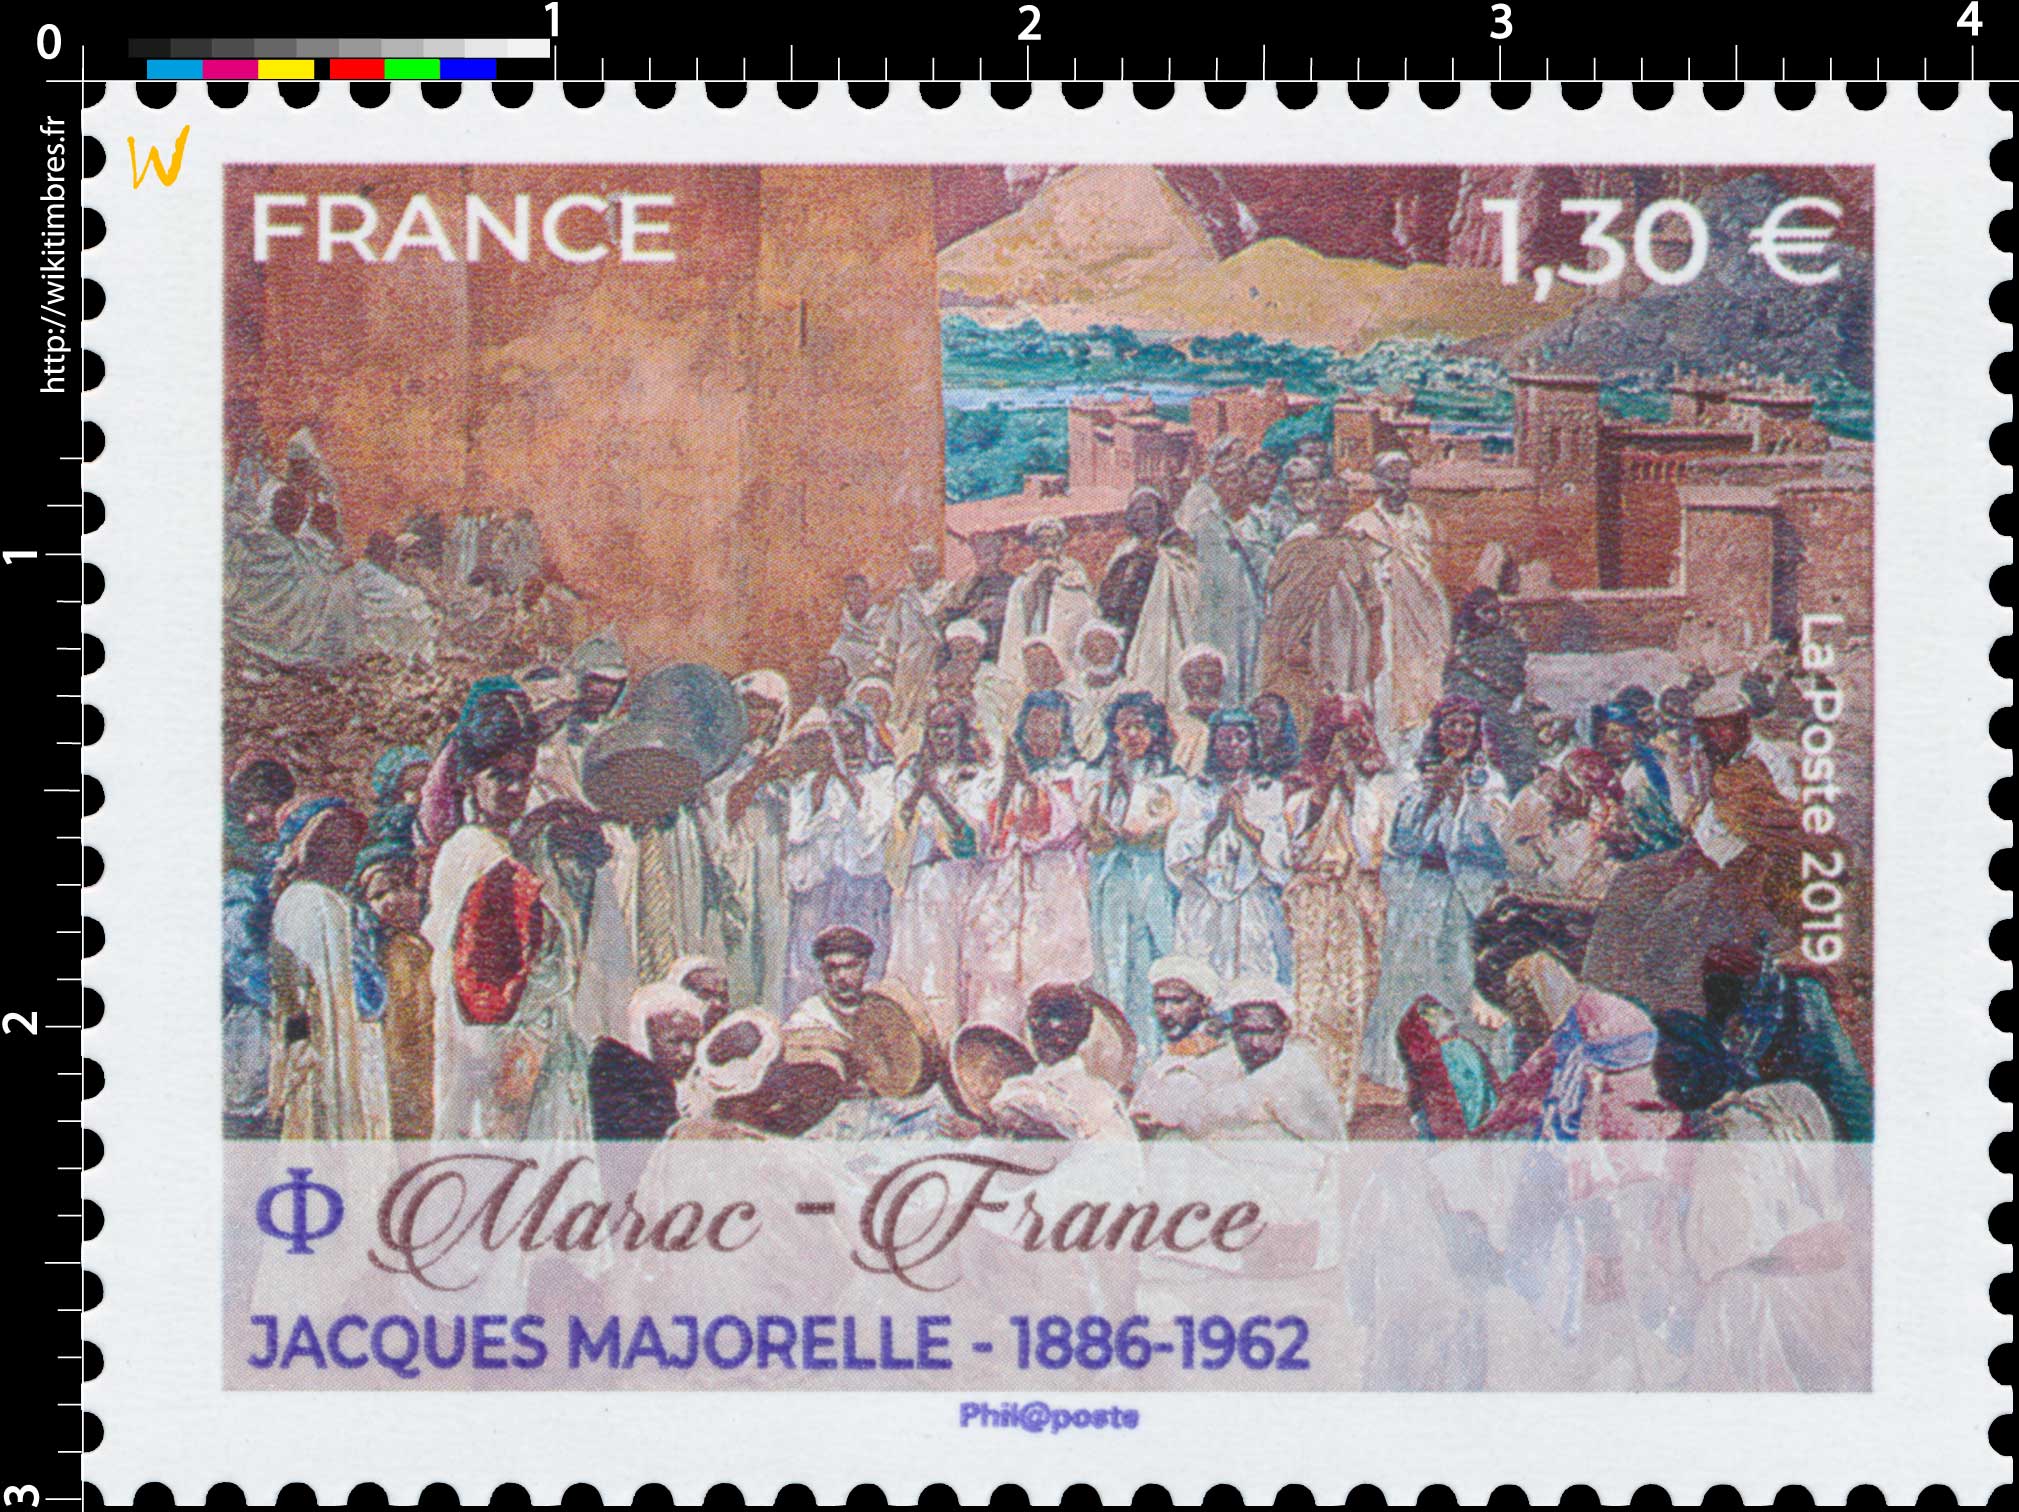 2019 Maroc - France Jacques Majorelle 1886-1962